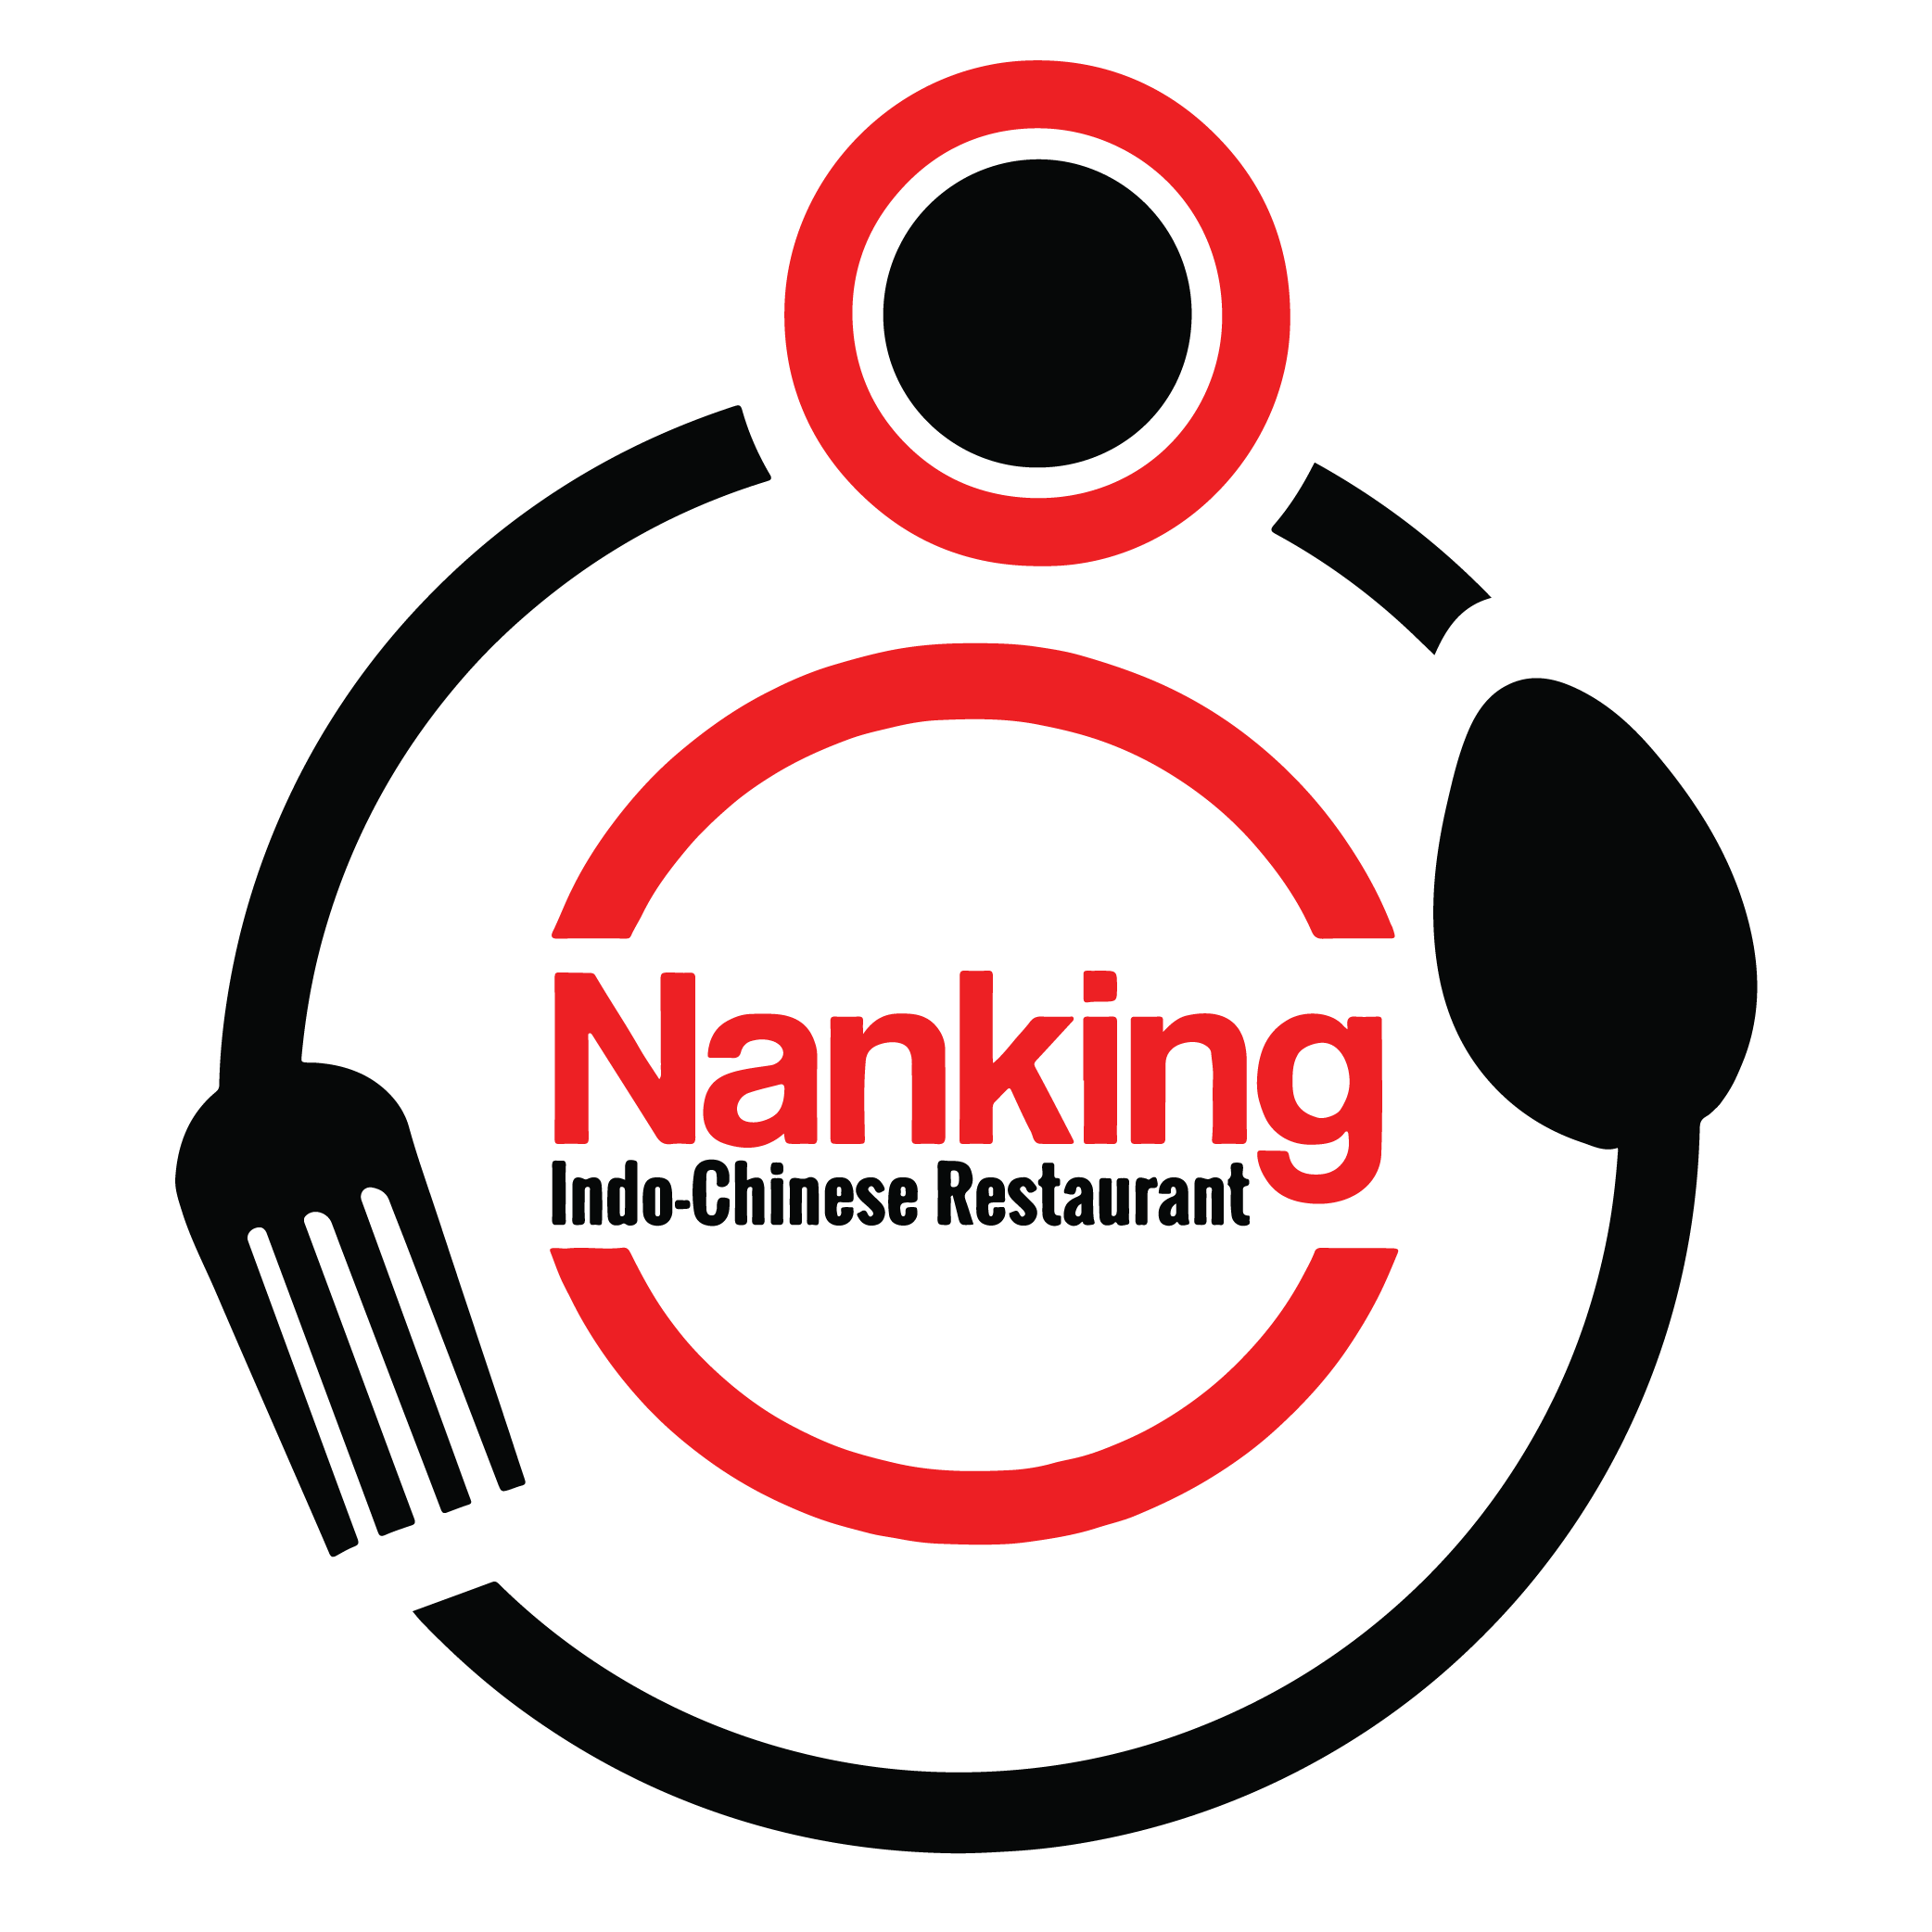 Nanking Indo Chinese Restaurant logo